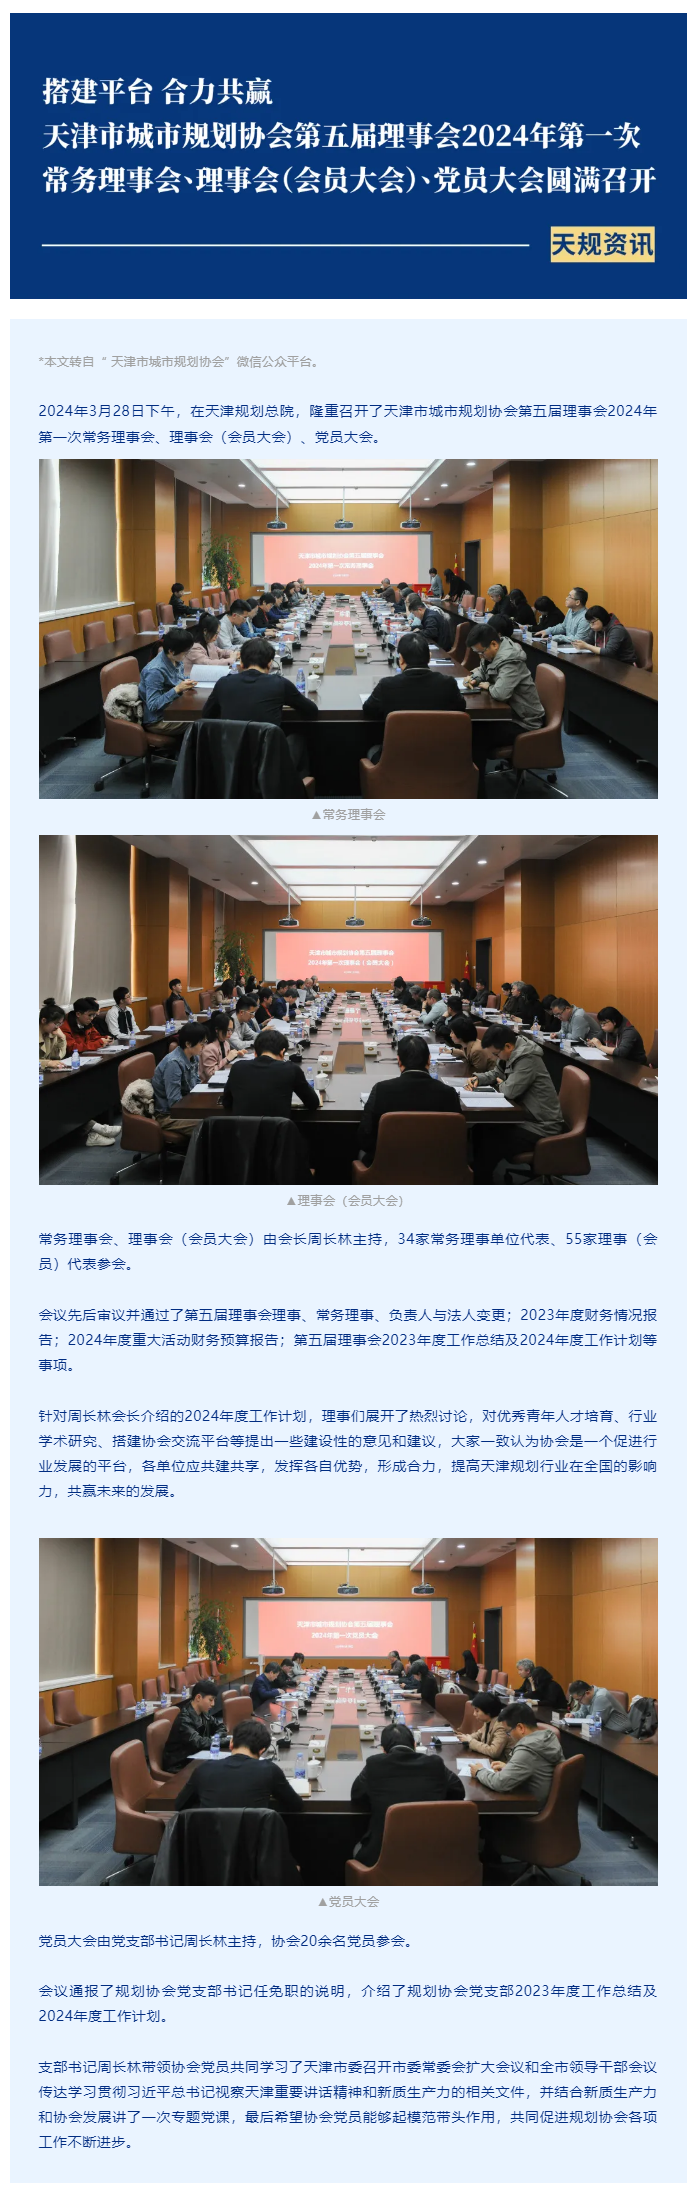 天规资讯 _ 天津市城市规划协会第五届理事会2024年第一次常务理事会、理事会（会员大会）、党员大会.png